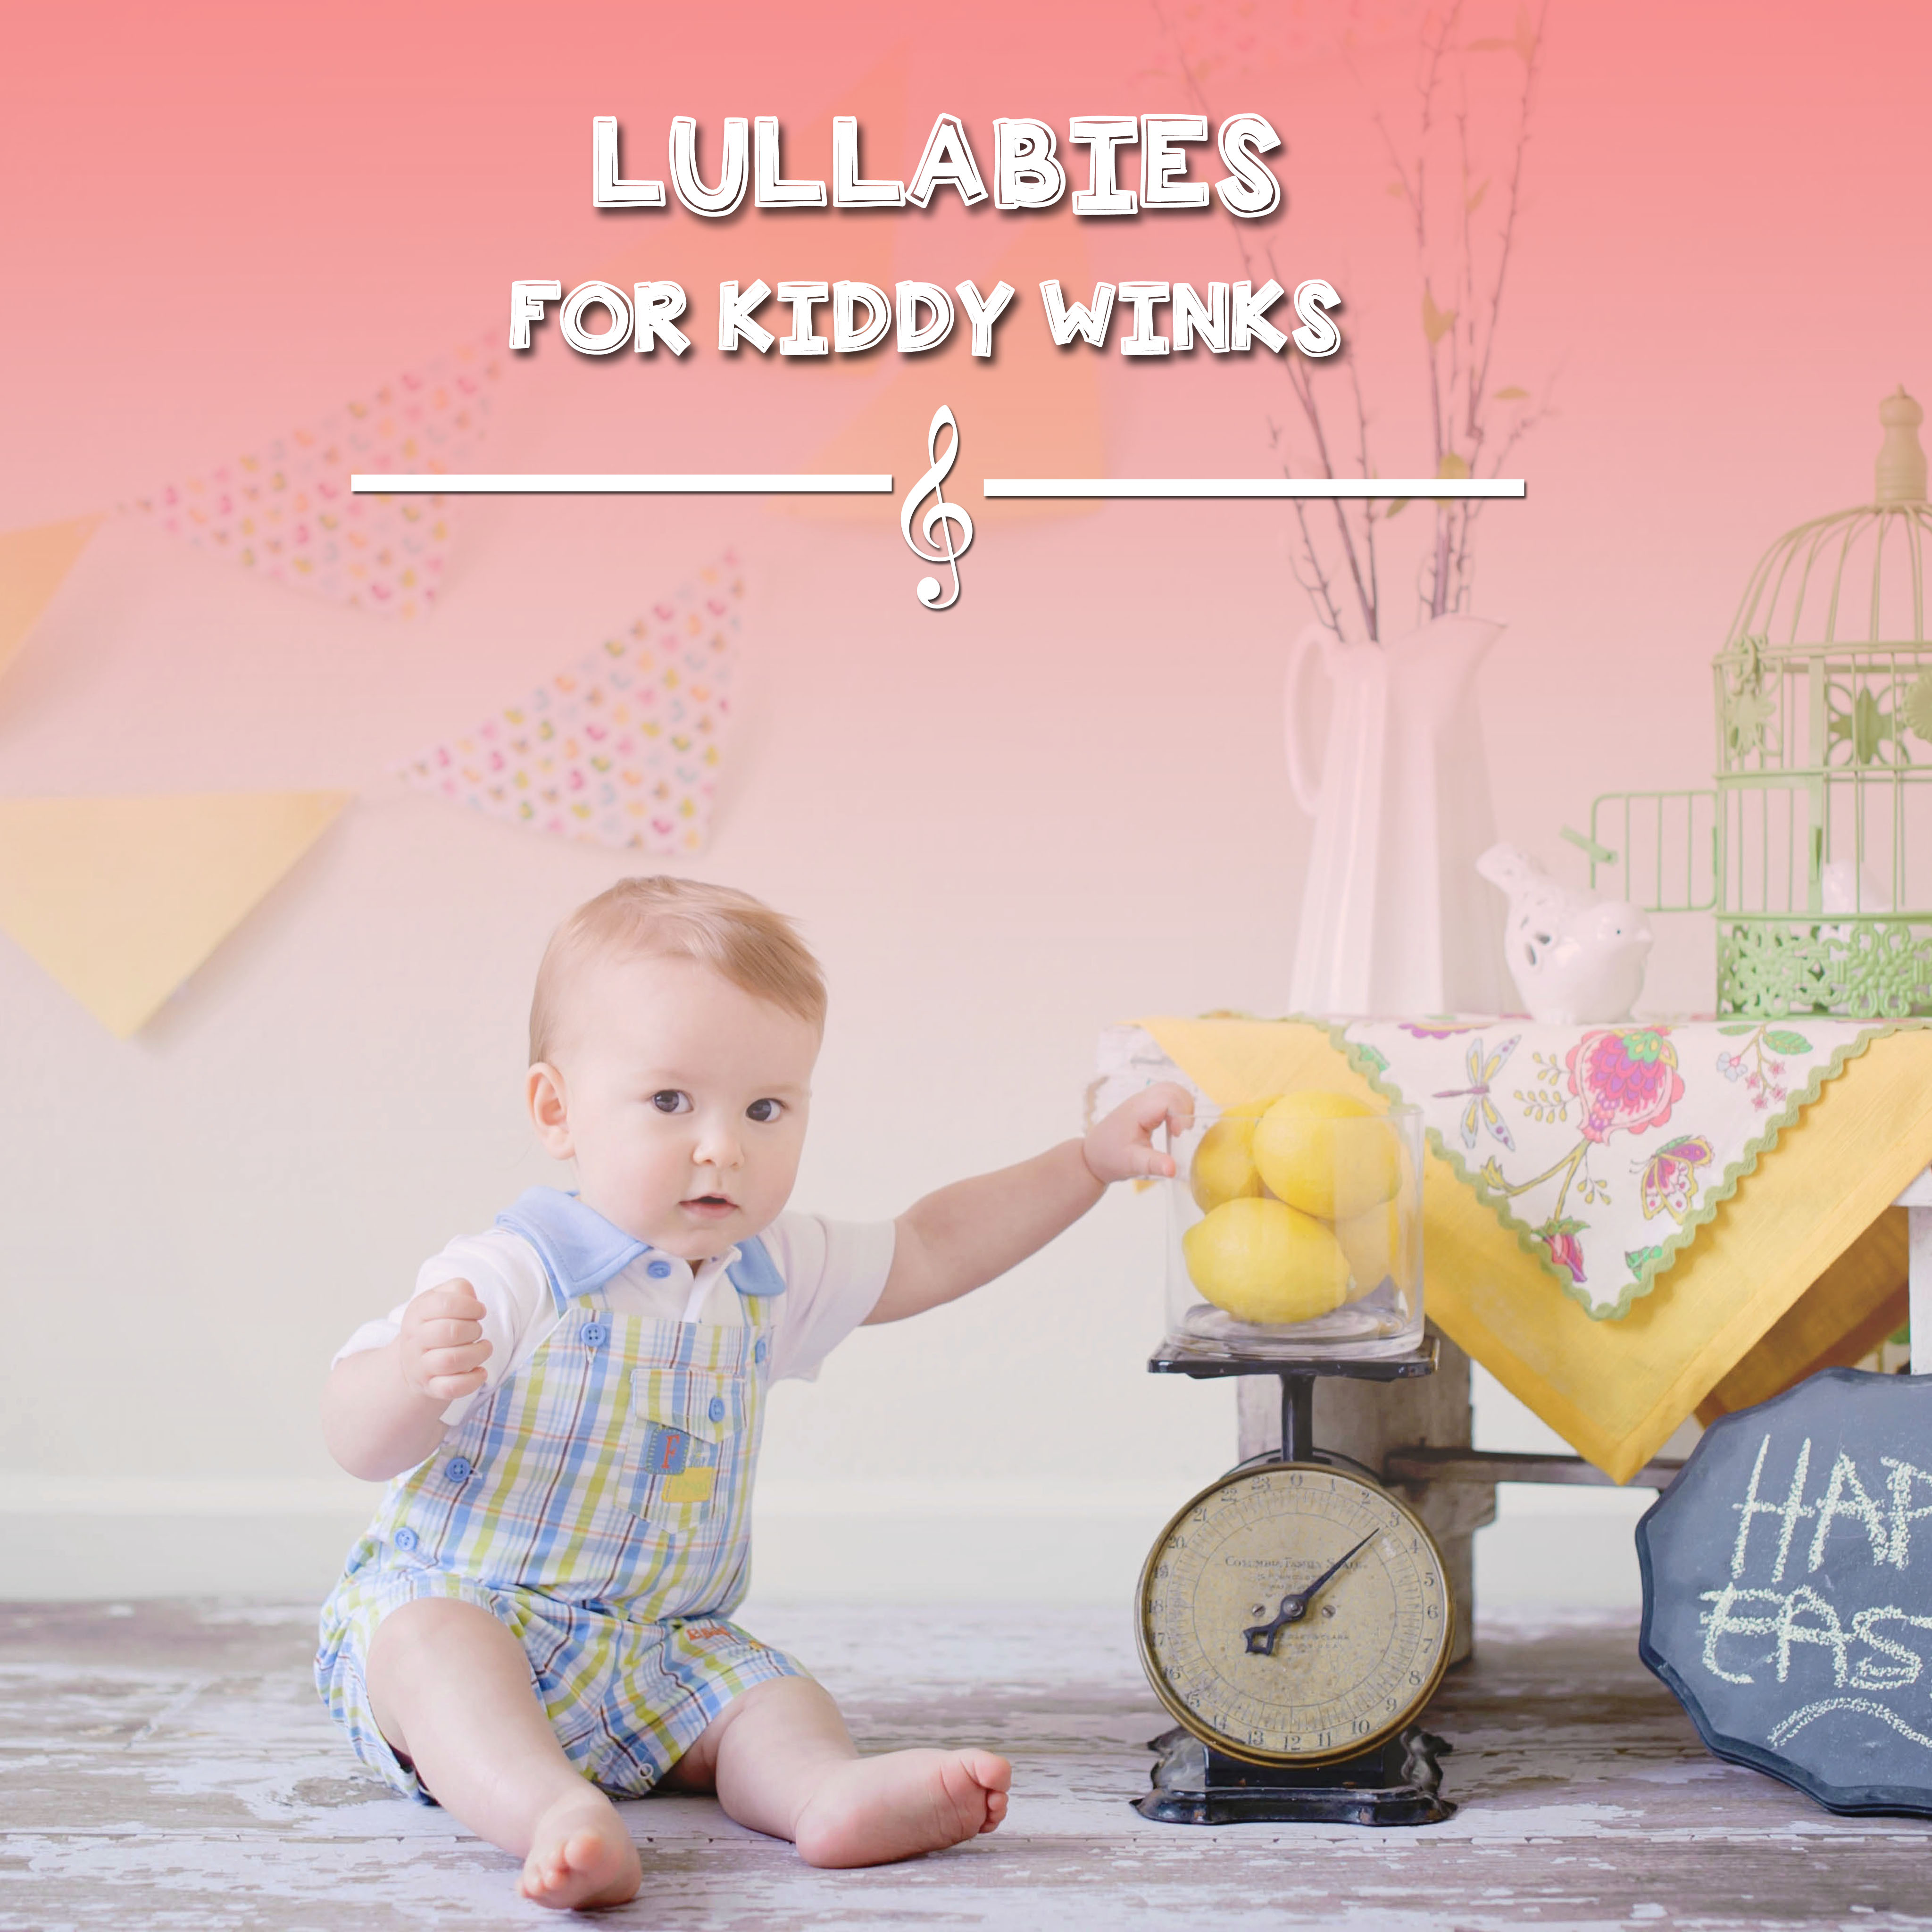 14 Lullabies for Kiddy Winks